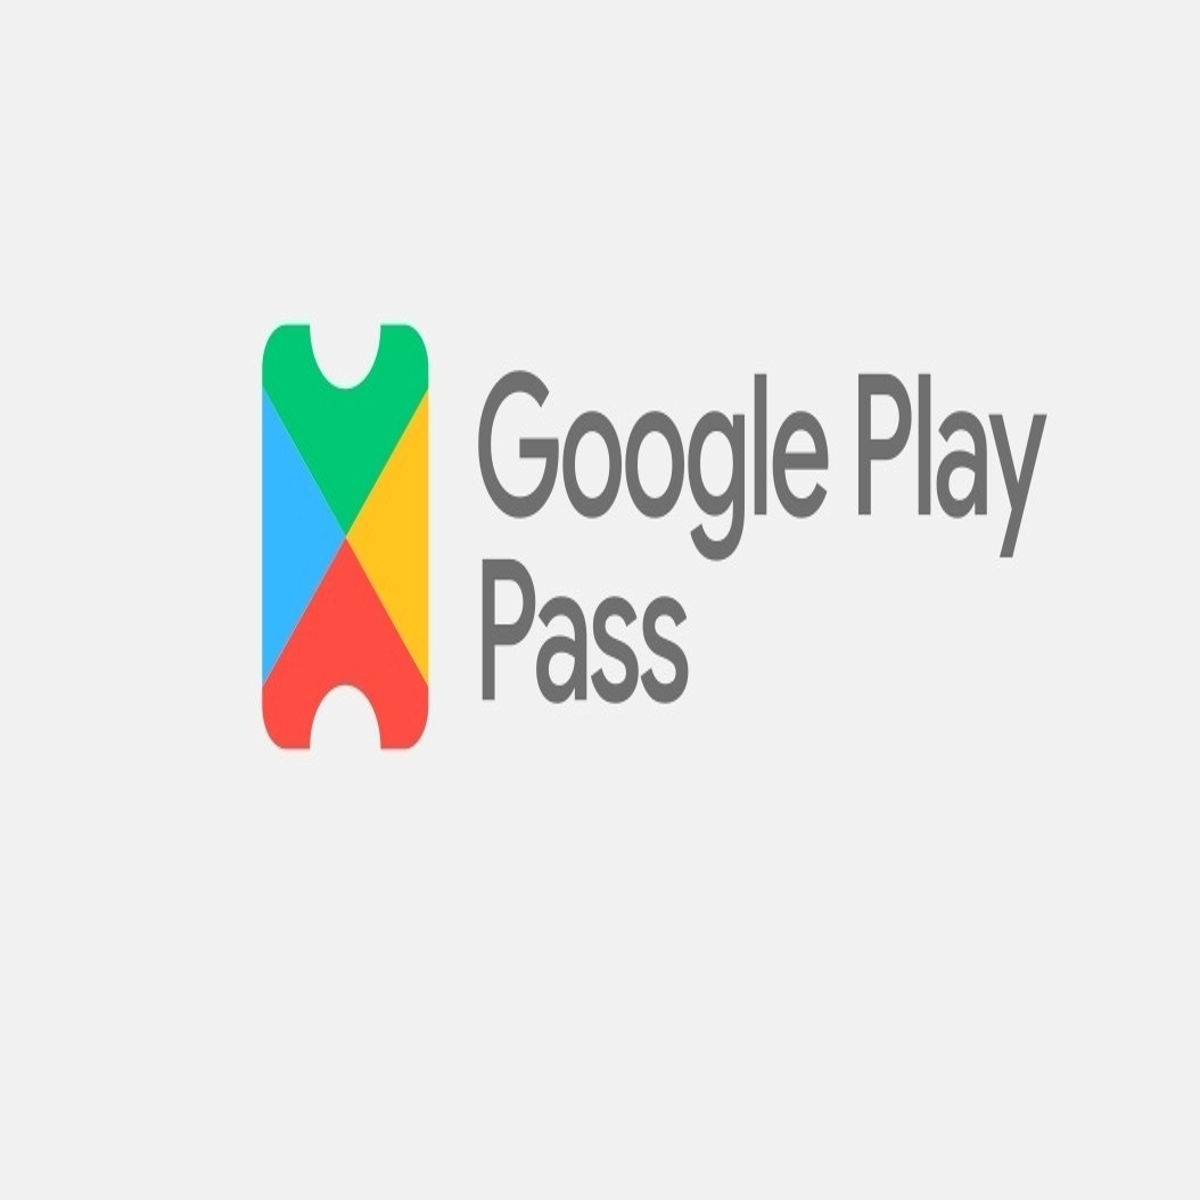 A lista de jogos do Google Play Pass - Alucare